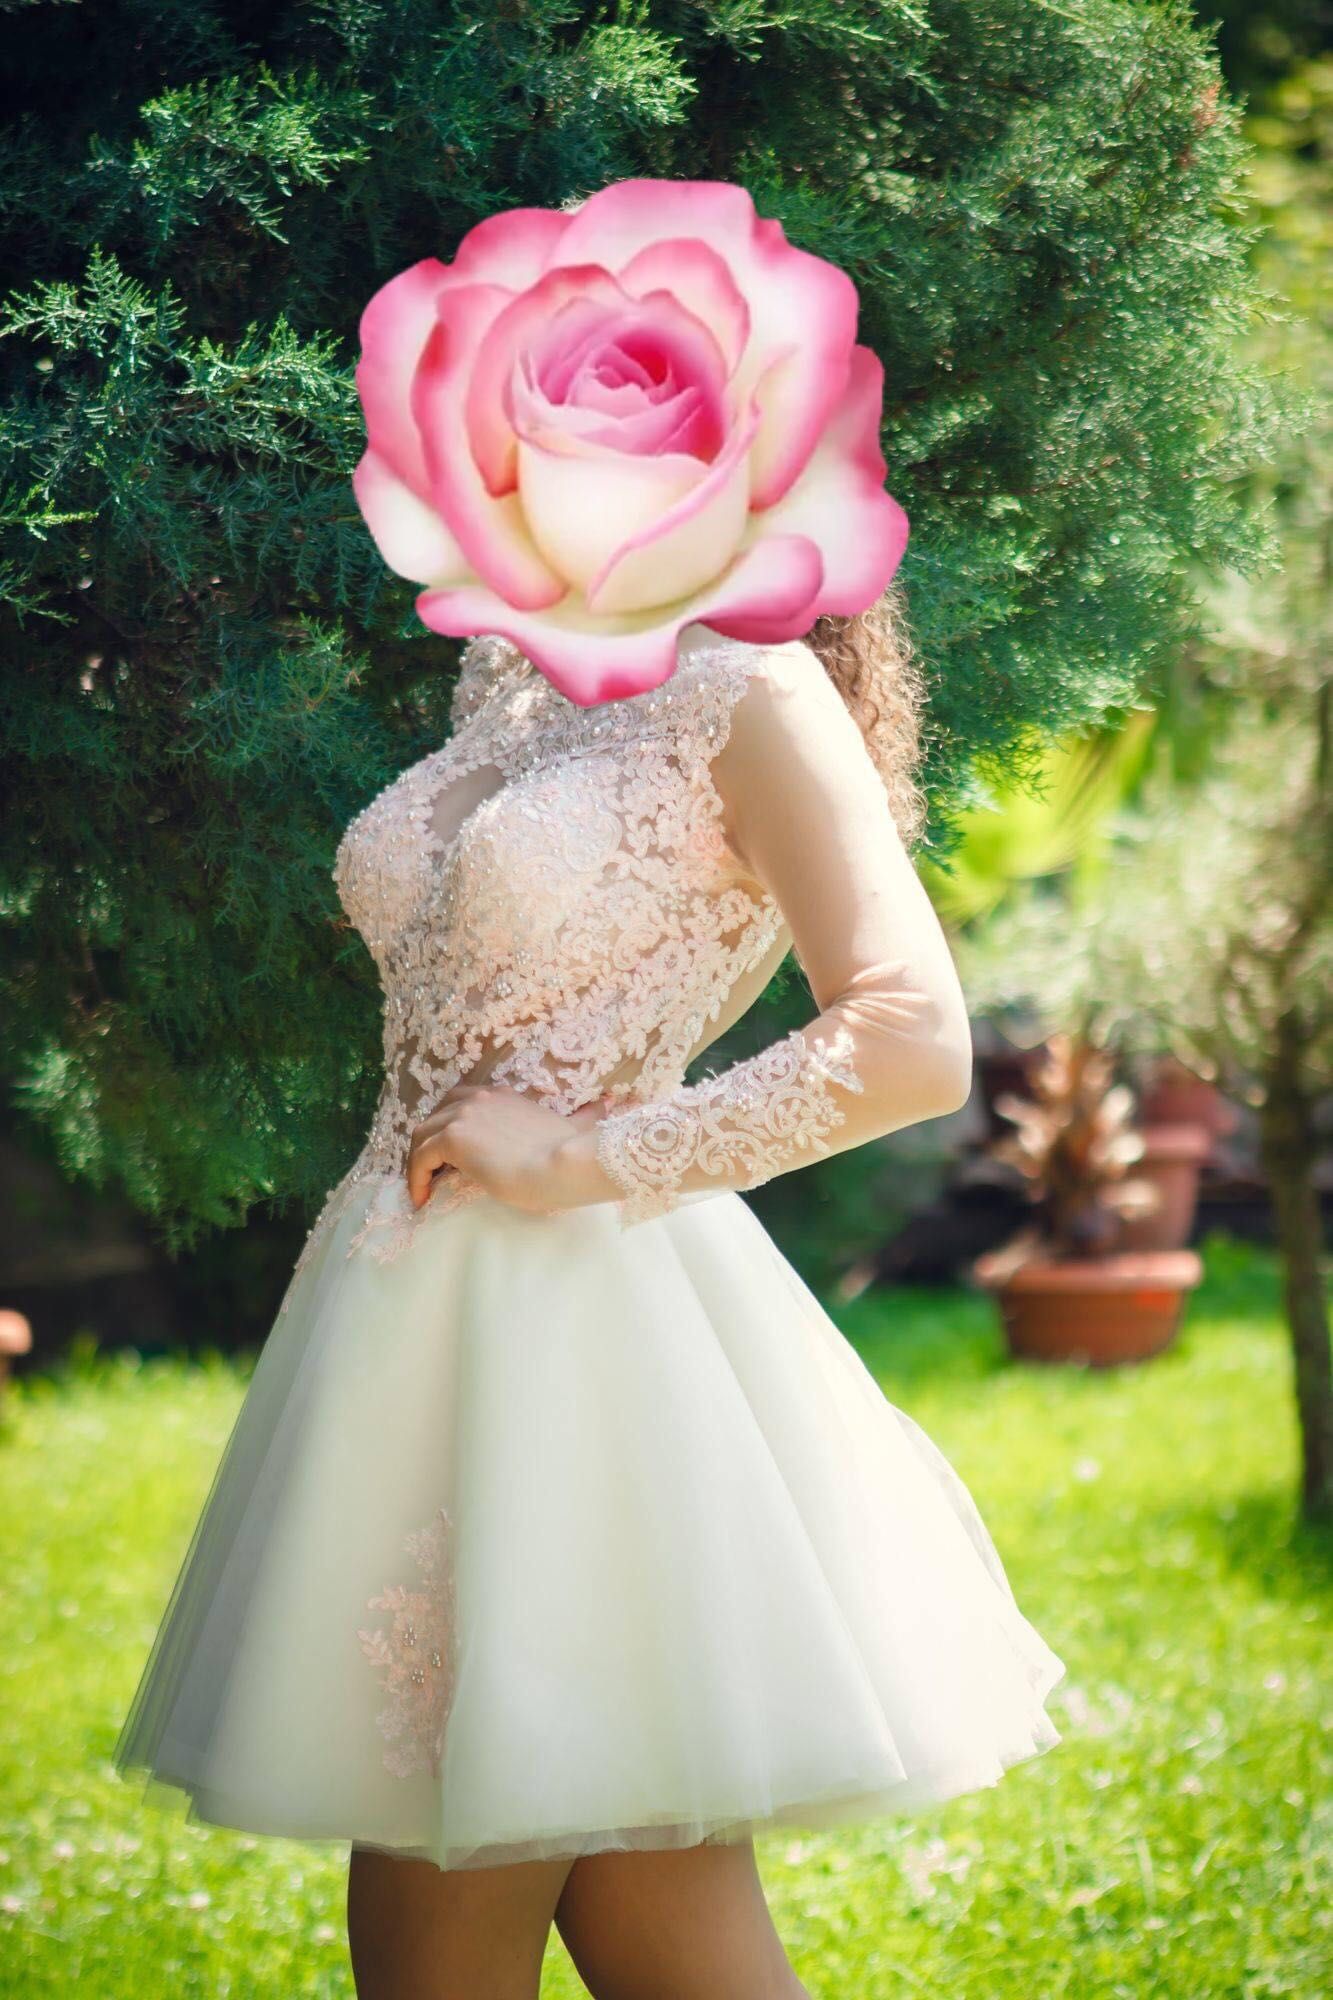 Бална/сватбена къса, без гръб, с ръкави и дантела розово-бяла рокля